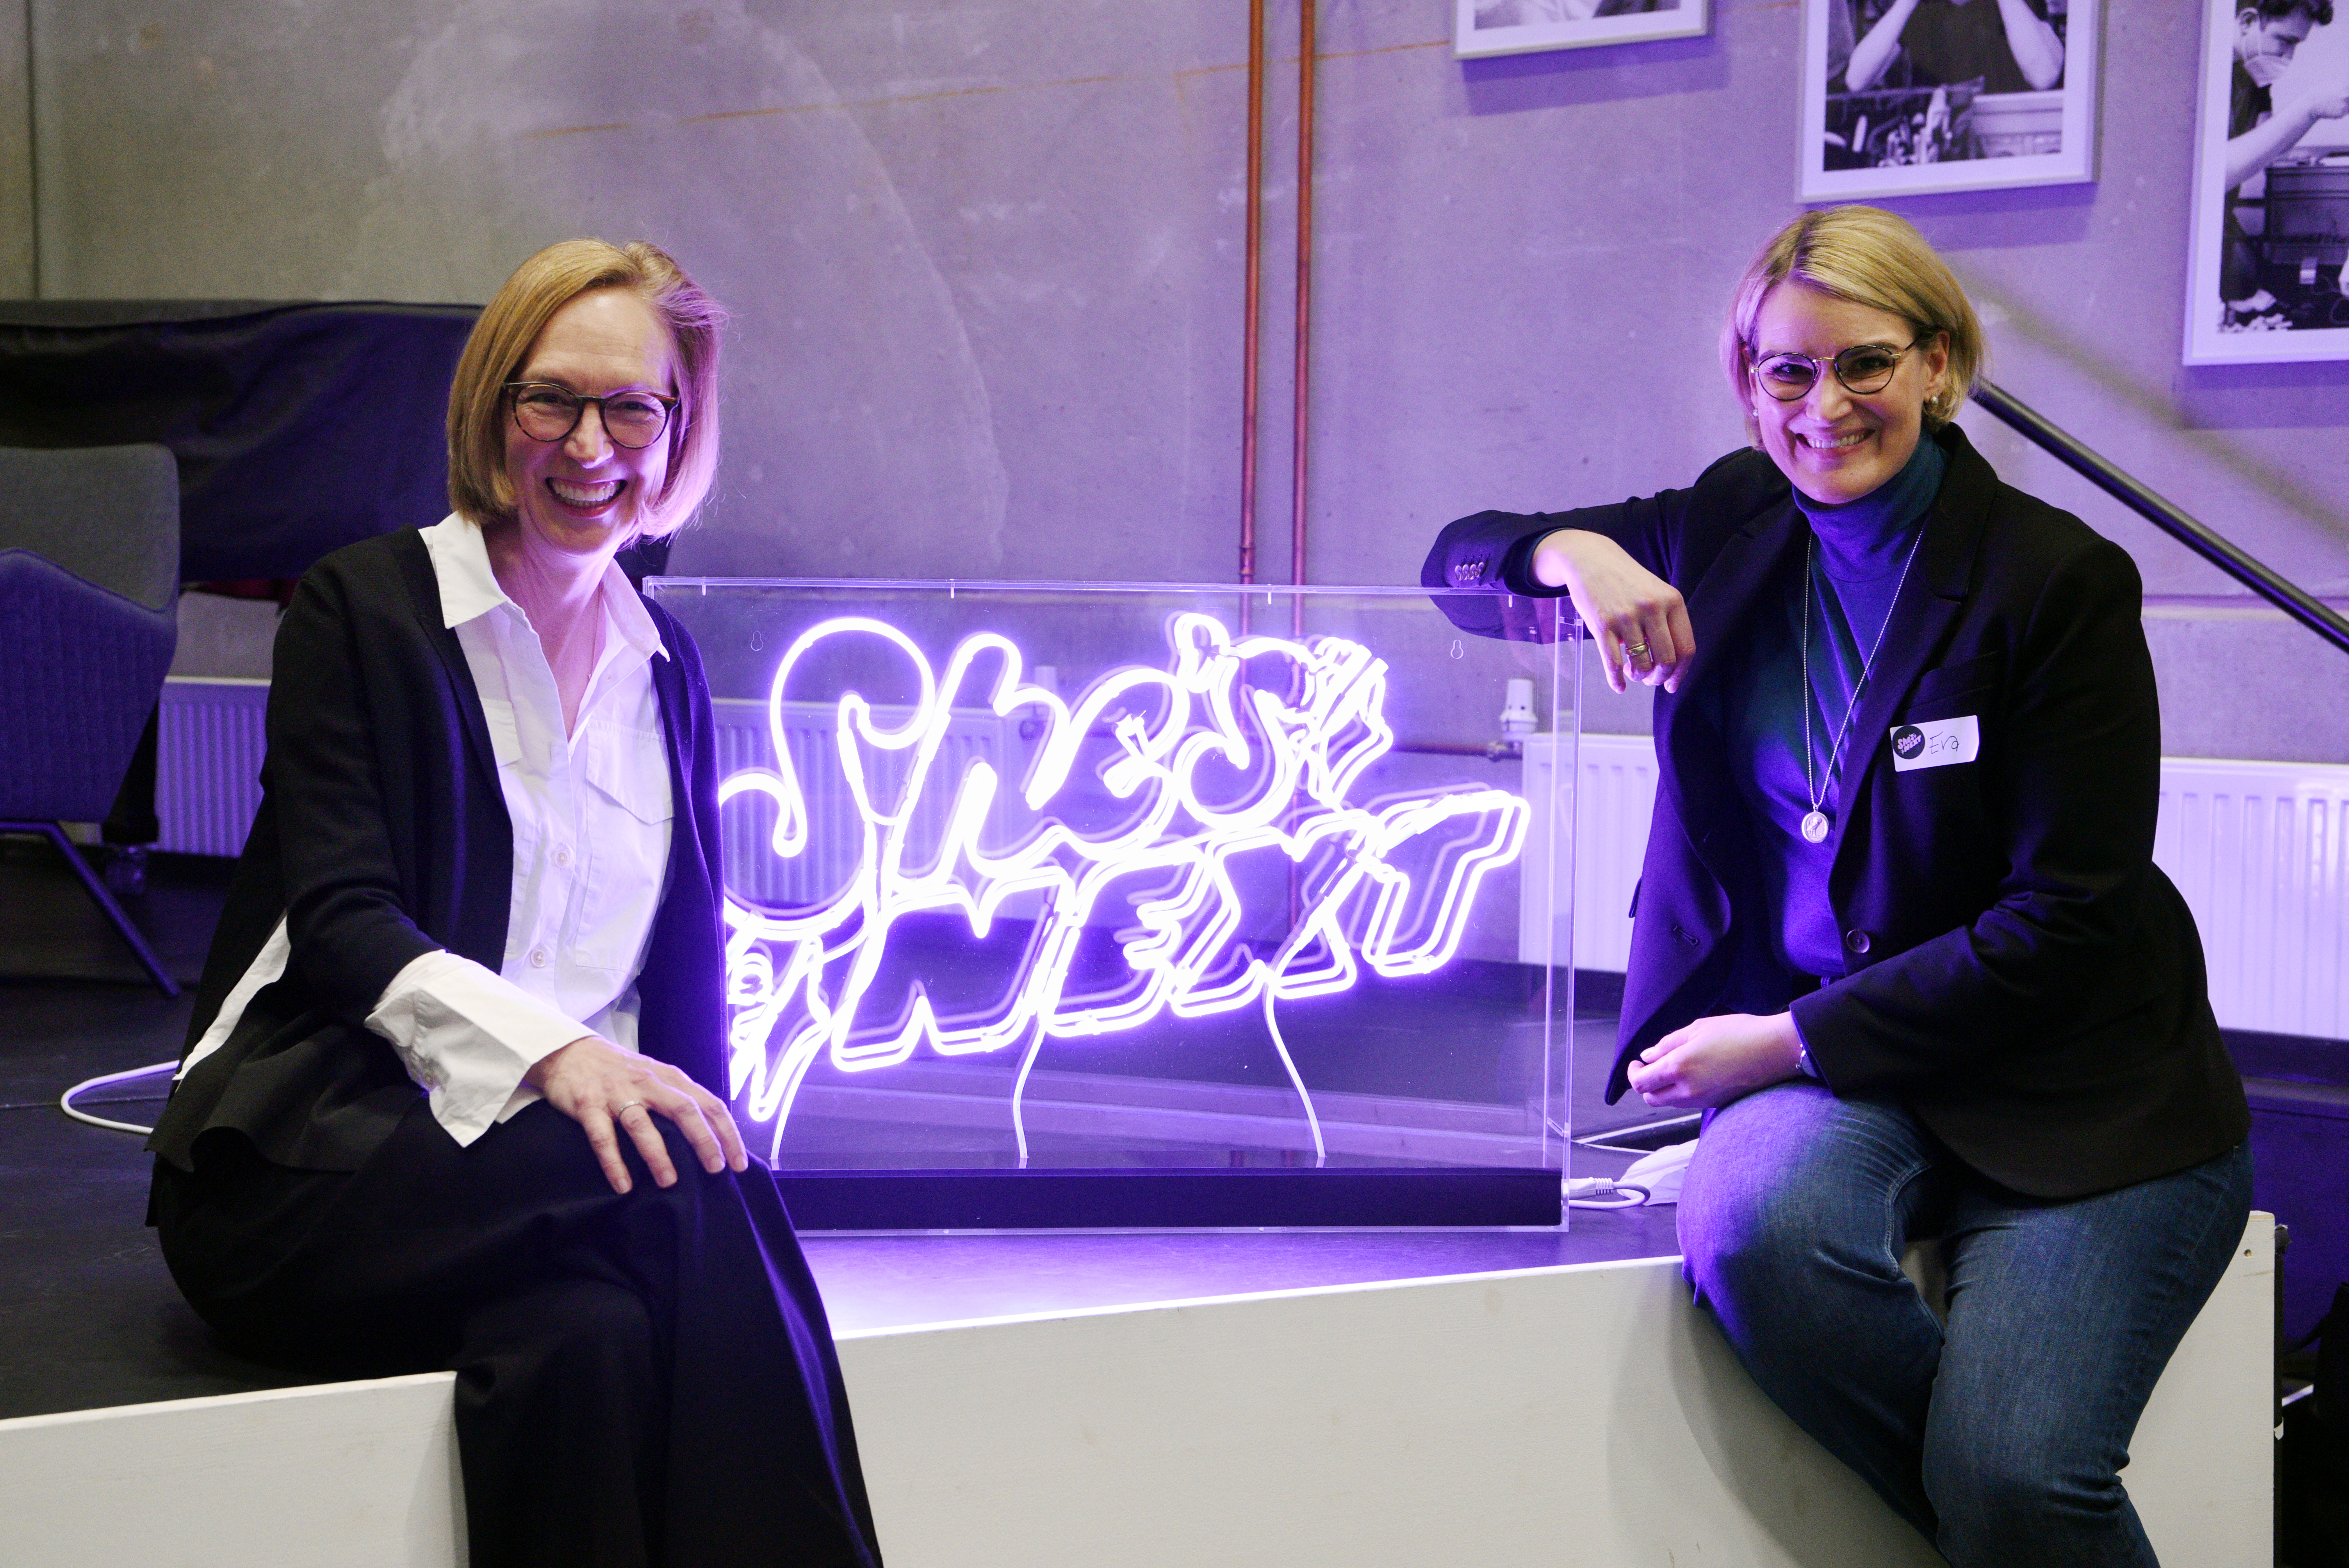 Zwei Frauen sitzen neben einer Leuchtschrift mit dem Text "She's next". Rechts im Bild ist Oberbürgermeisterin Eva Weber